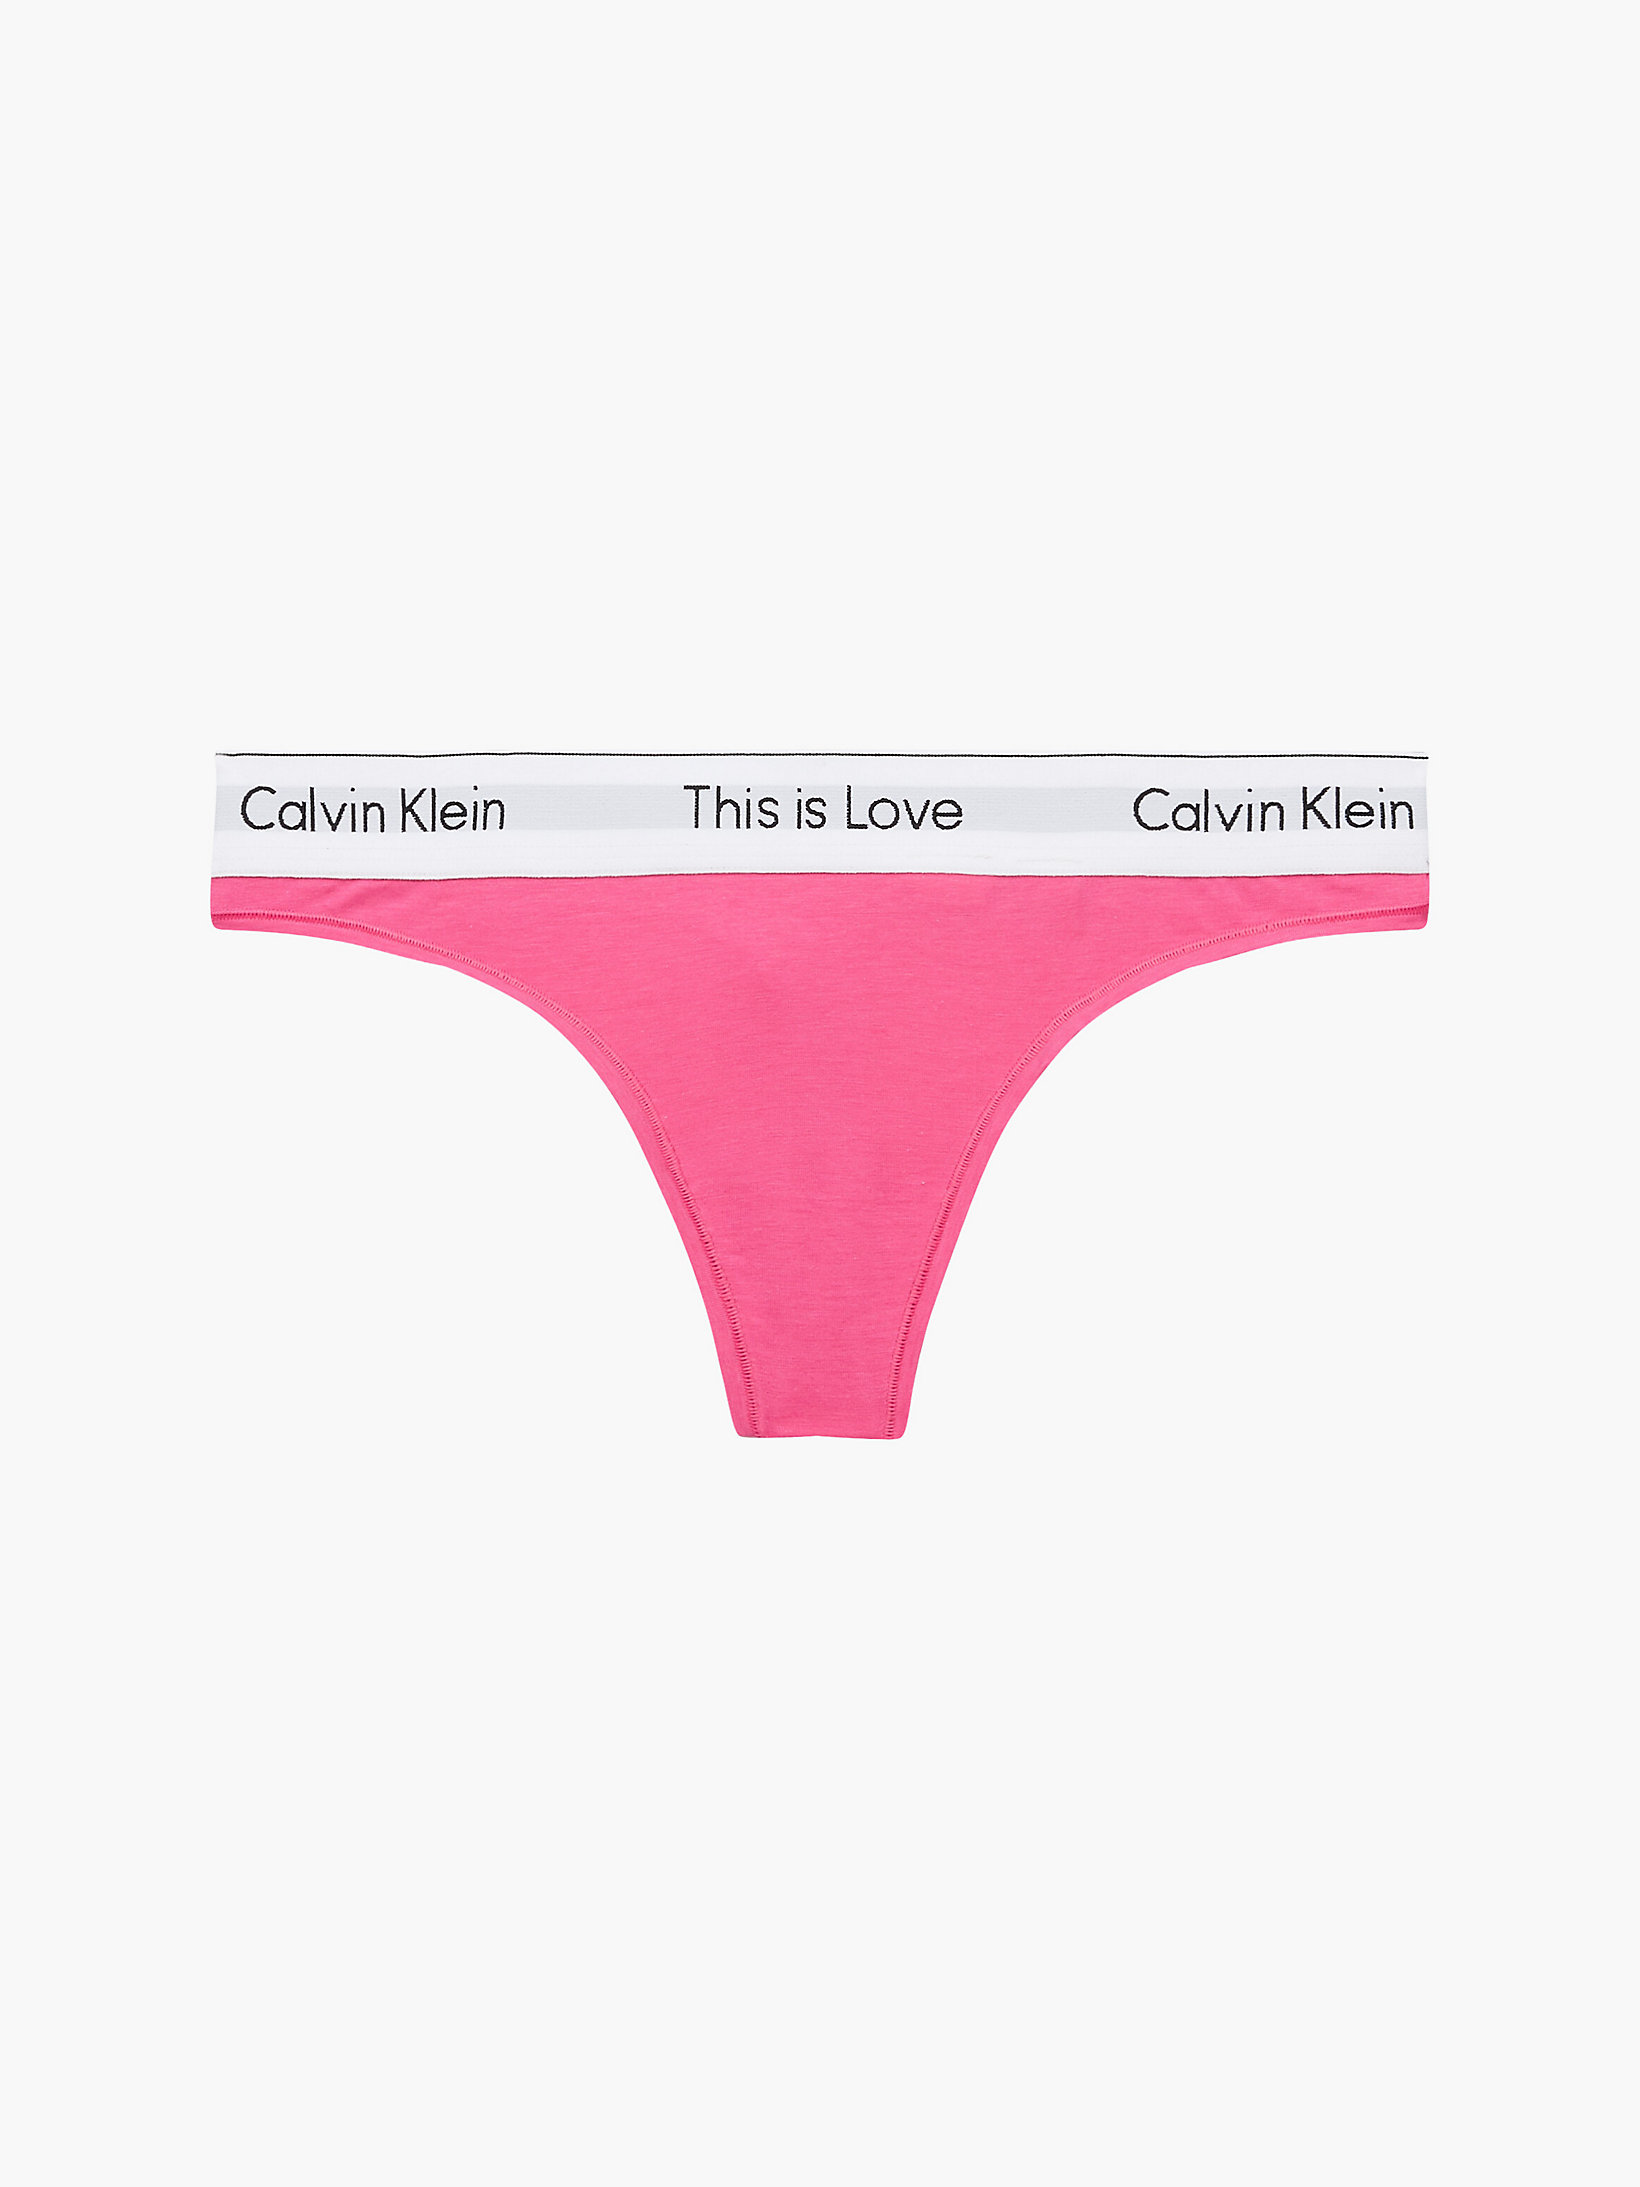 String - Pride > Pink Flambe > undefined femmes > Calvin Klein